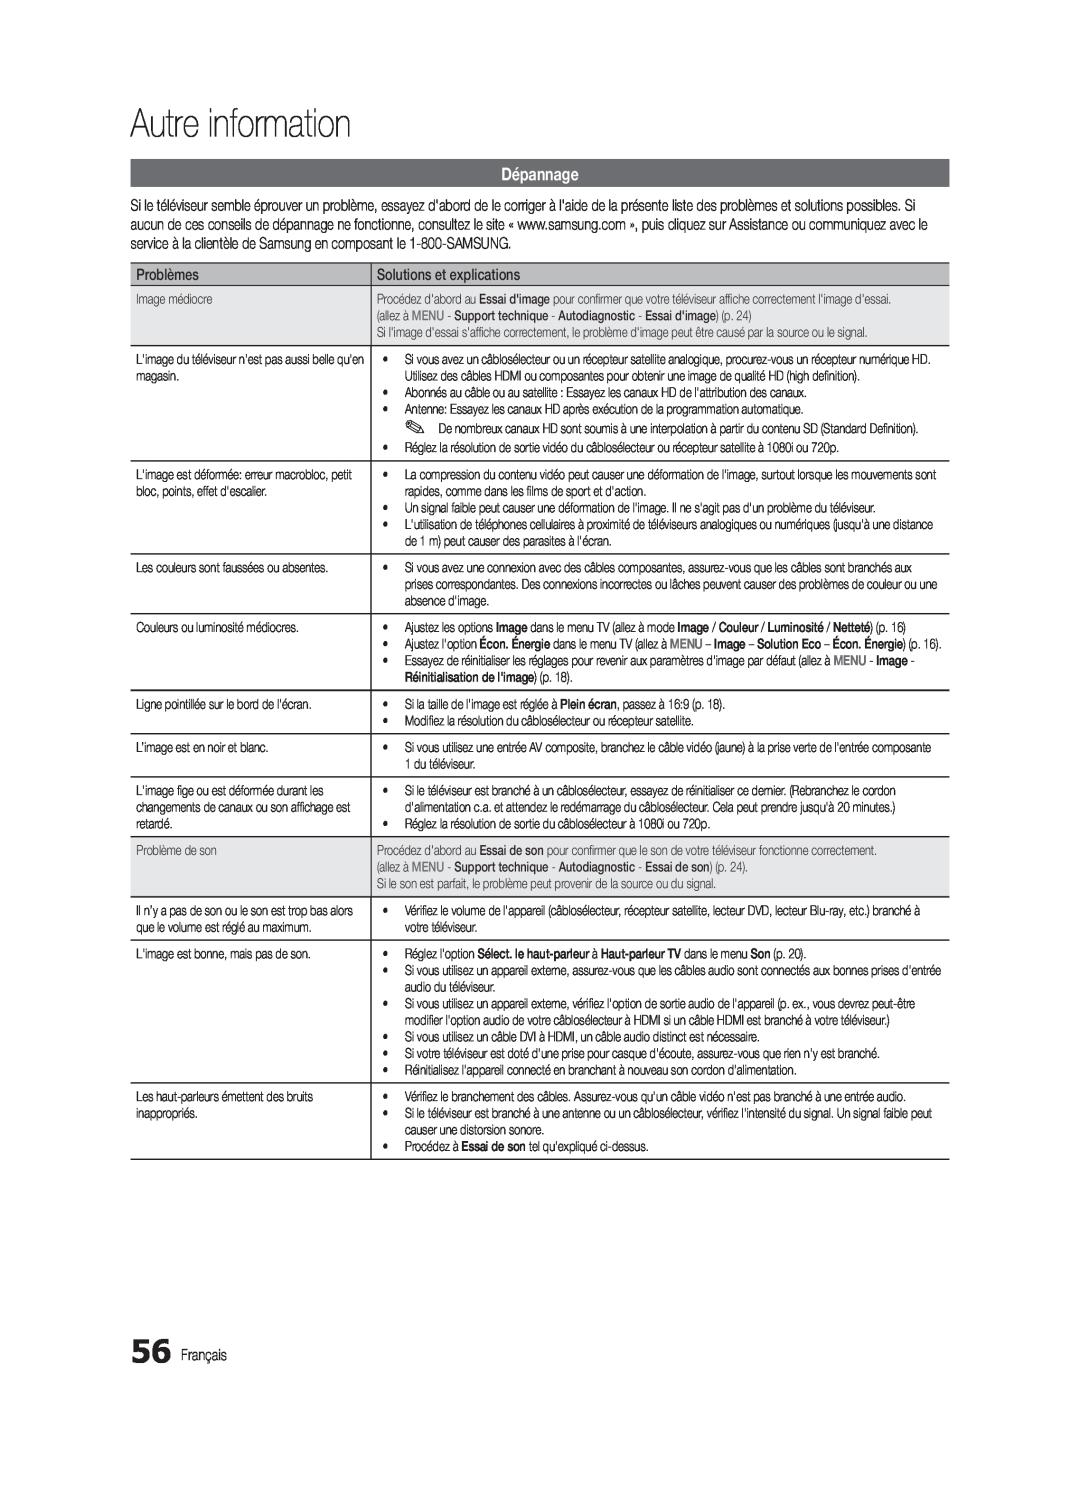 Samsung BN68-02711B-04, UC6500-ZC user manual Dépannage, Autre information, Problèmes, Solutions et explications, Français 